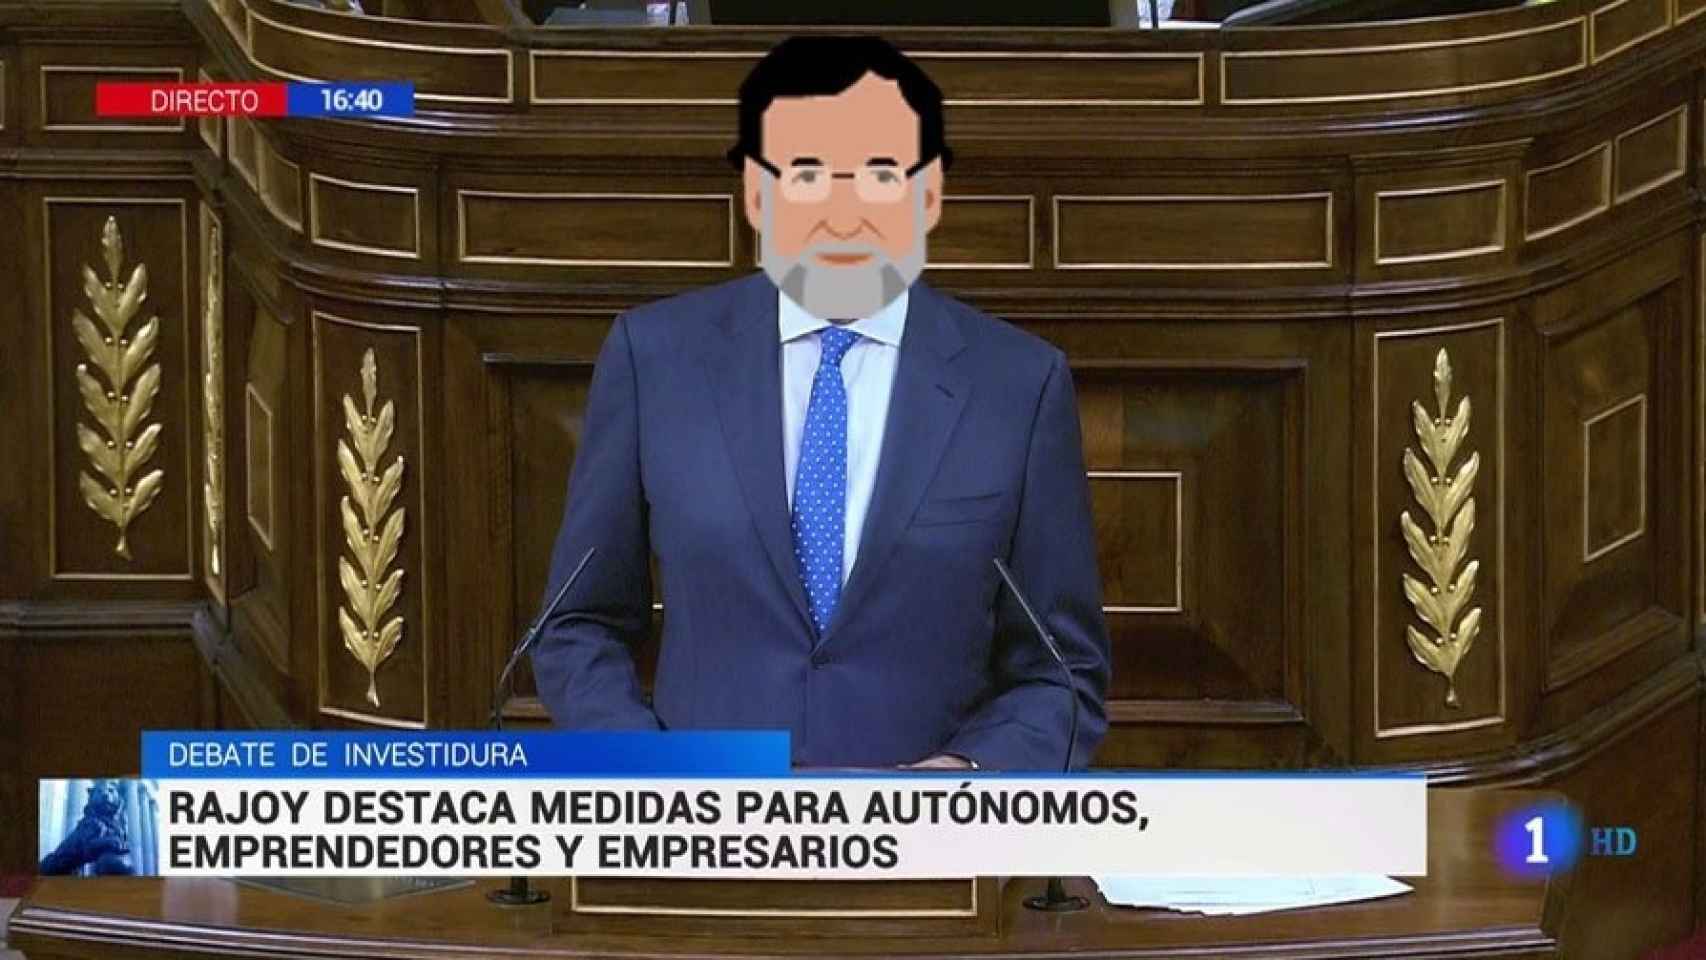 Mariano Rajoy interviniendo en el Parlamento con un emoji sobre su cara.